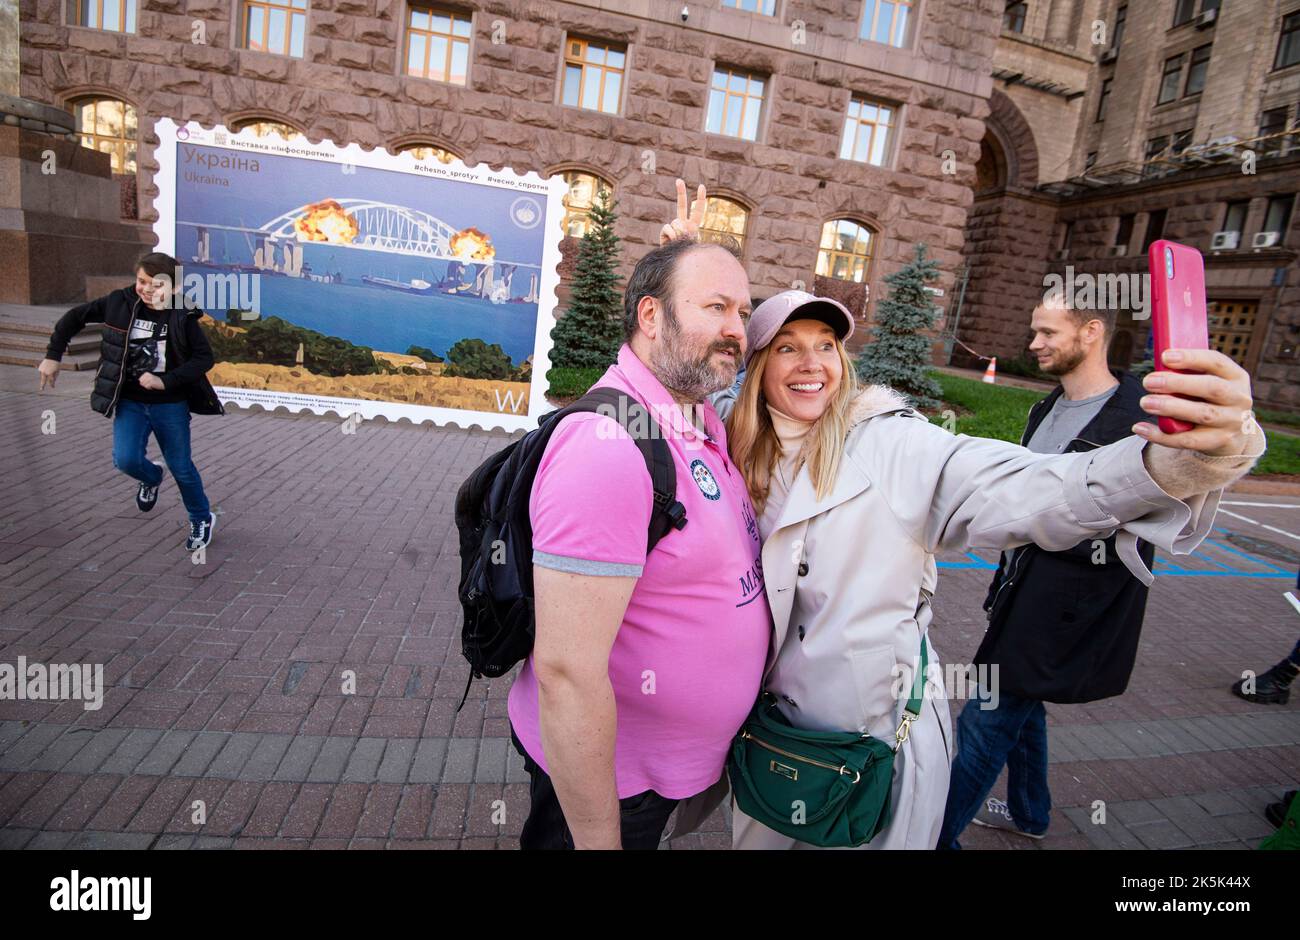 Украинцы радуются теракту в крокусе. Украинцы фотографируются на фоне моста. Украинцы фотографируются на фоне Крымского моста. Хохлы фотографируются на фоне марки. Люди в Киеве фоткаются на фоне марки.